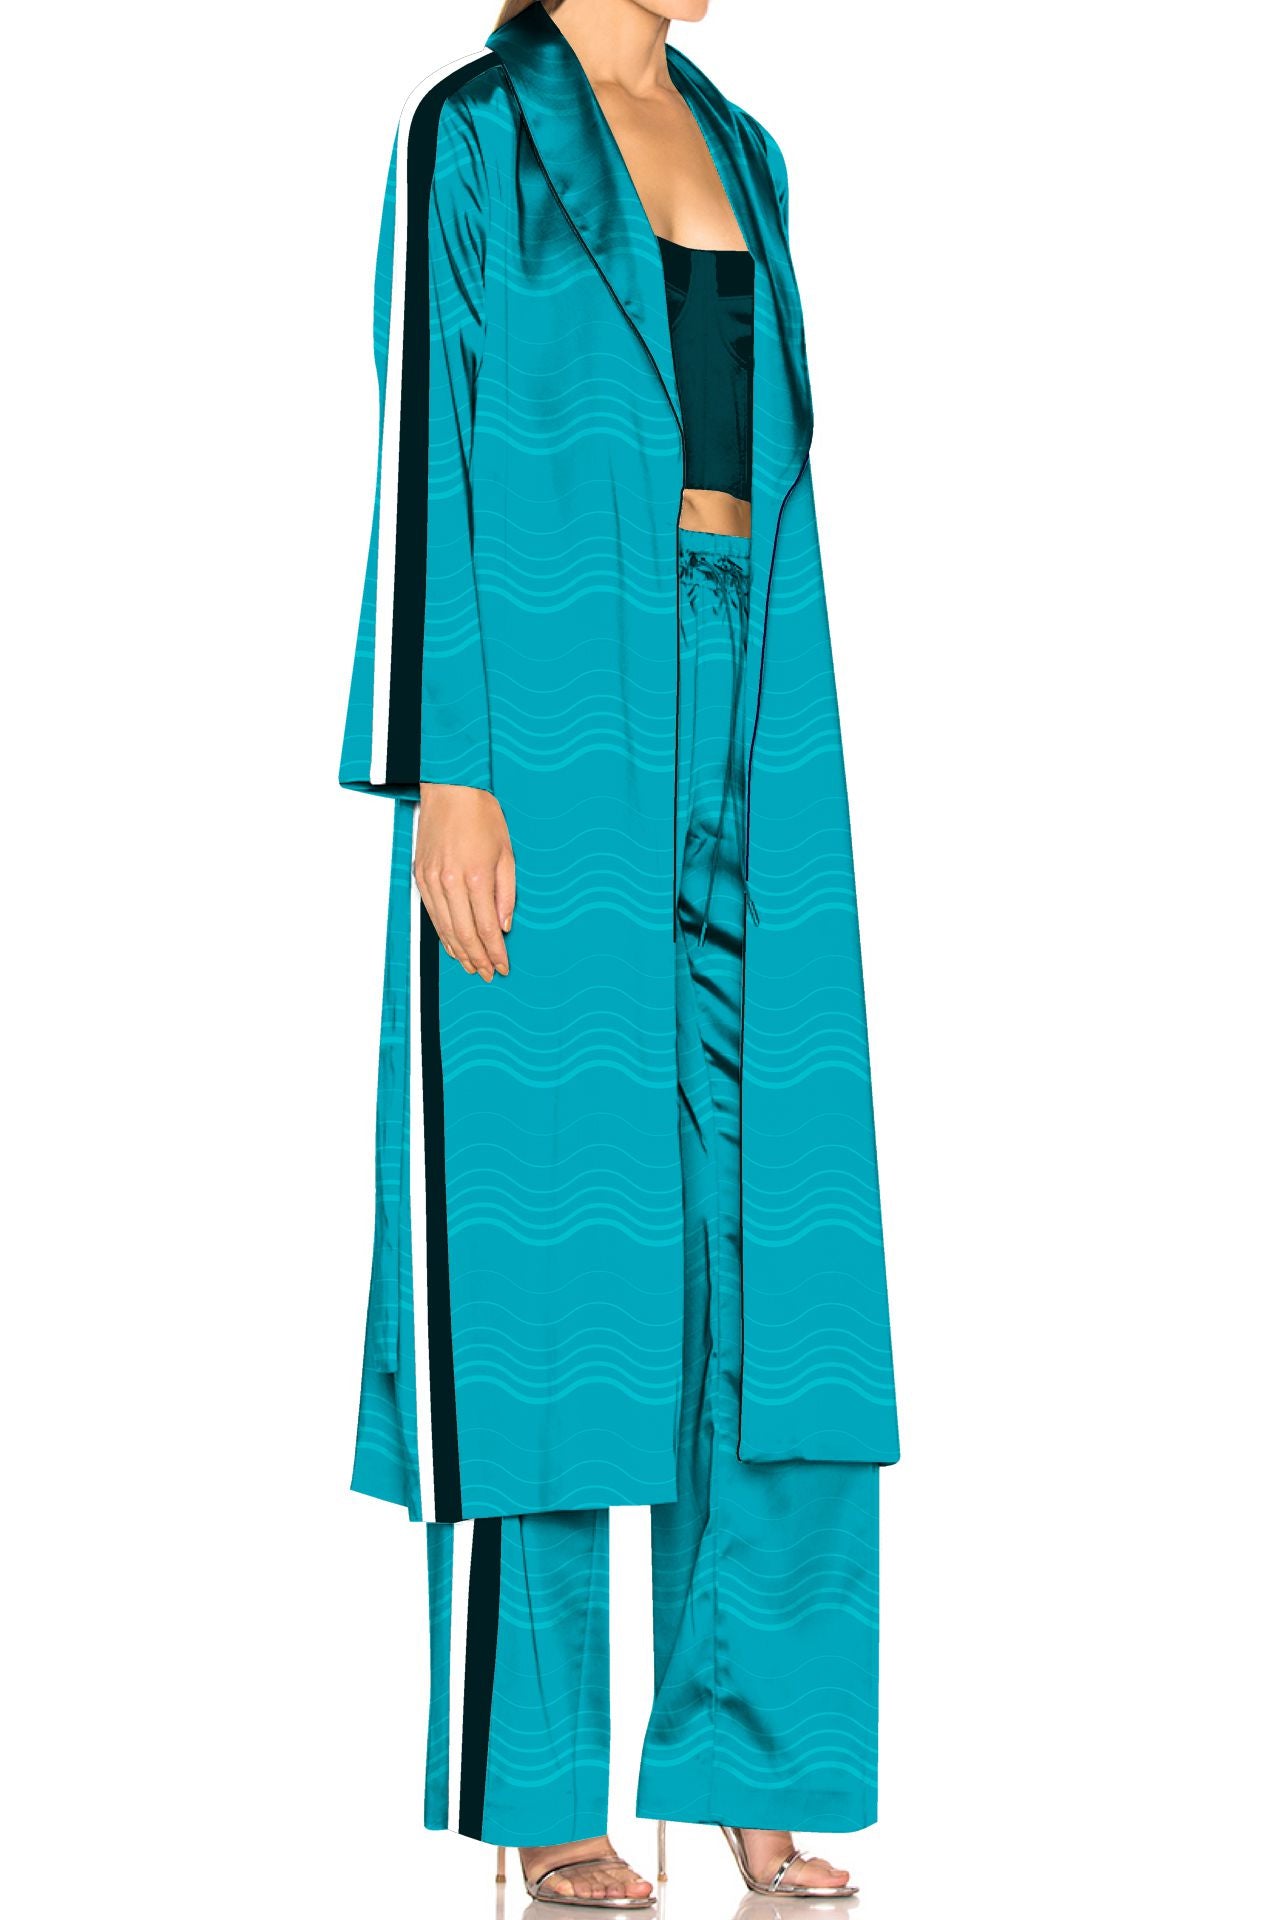 "pajamas matching robe" "silk pajama robe set" "matching robe and pajamas" "Kyle X Shahida" 